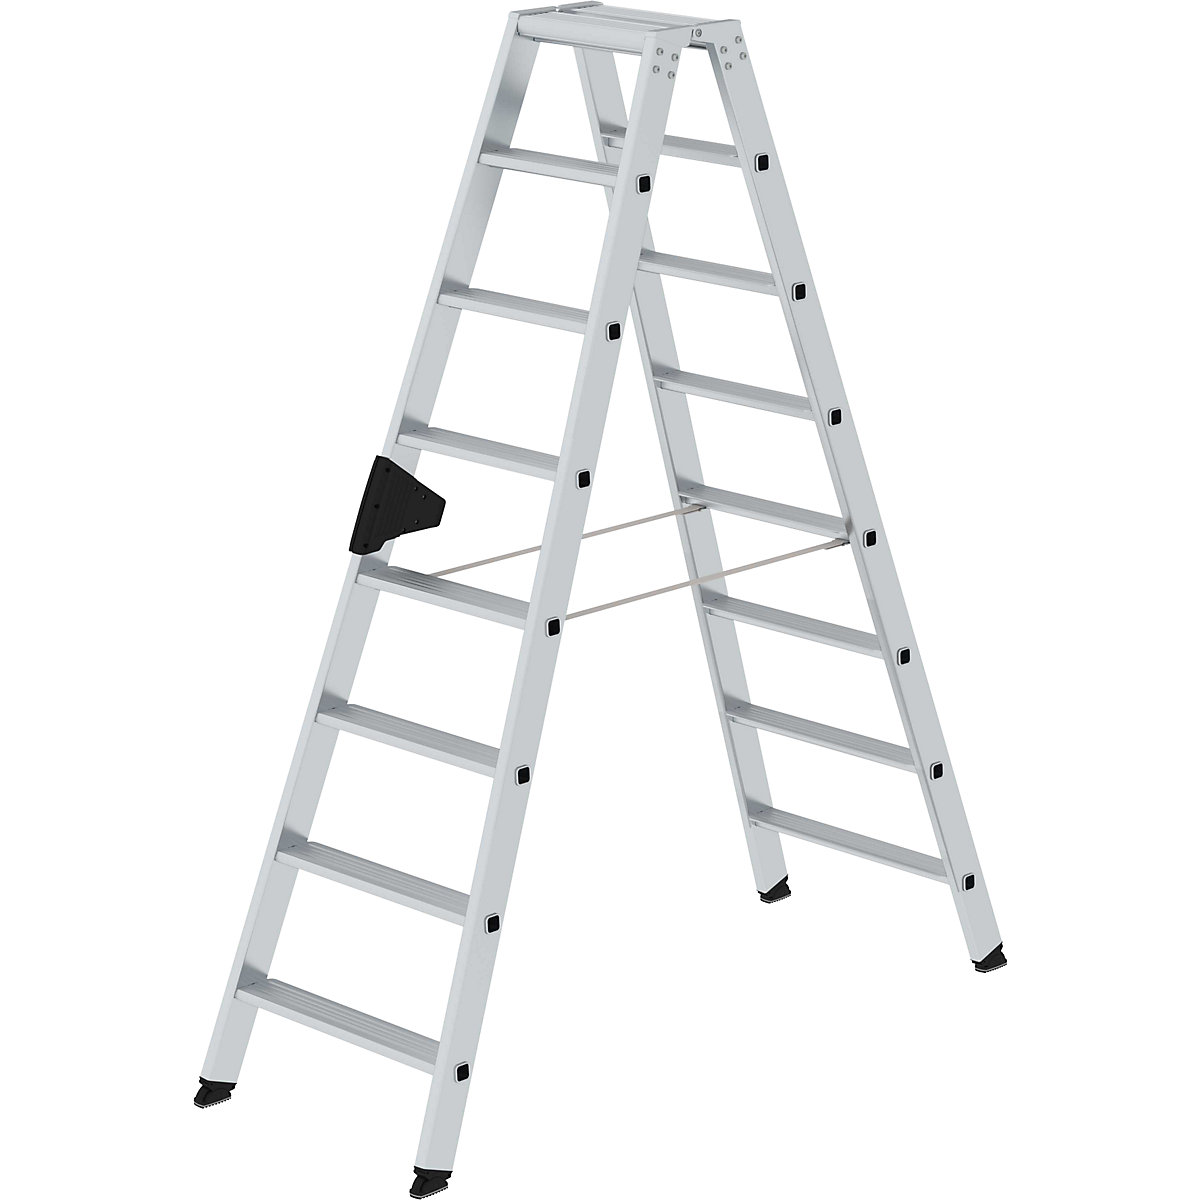 Escalera tipo tijera de peldaños planos, ascenso por ambos lados – MUNK, modelo extra cómodo con ergo-pad®, 2x8 escalones-15